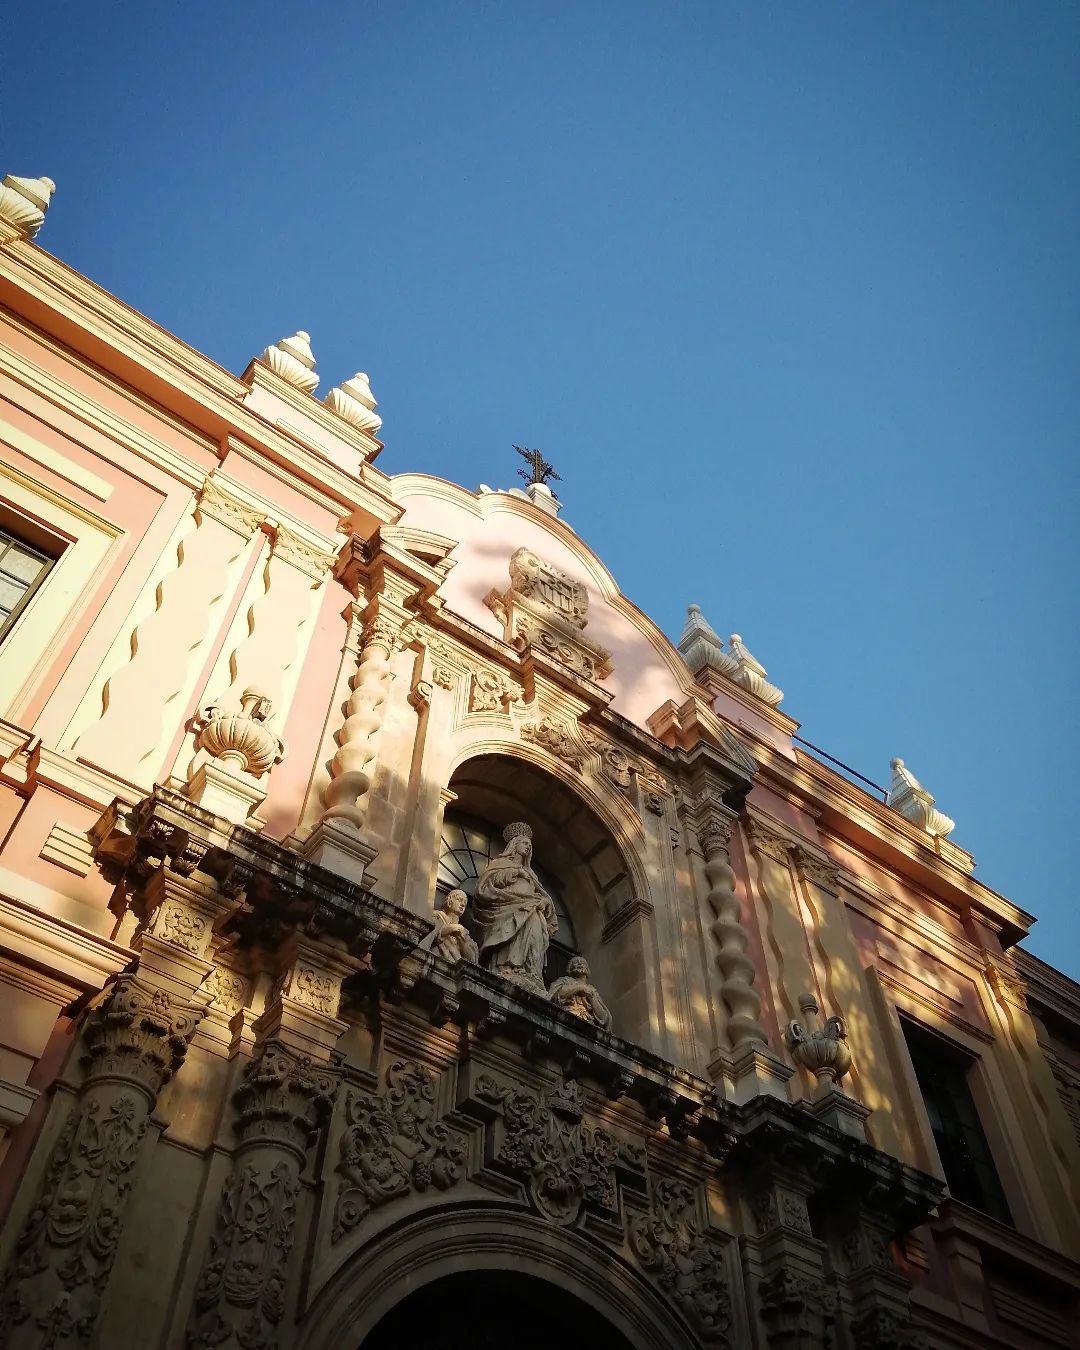 Museo Bellas Artes de Sevilla